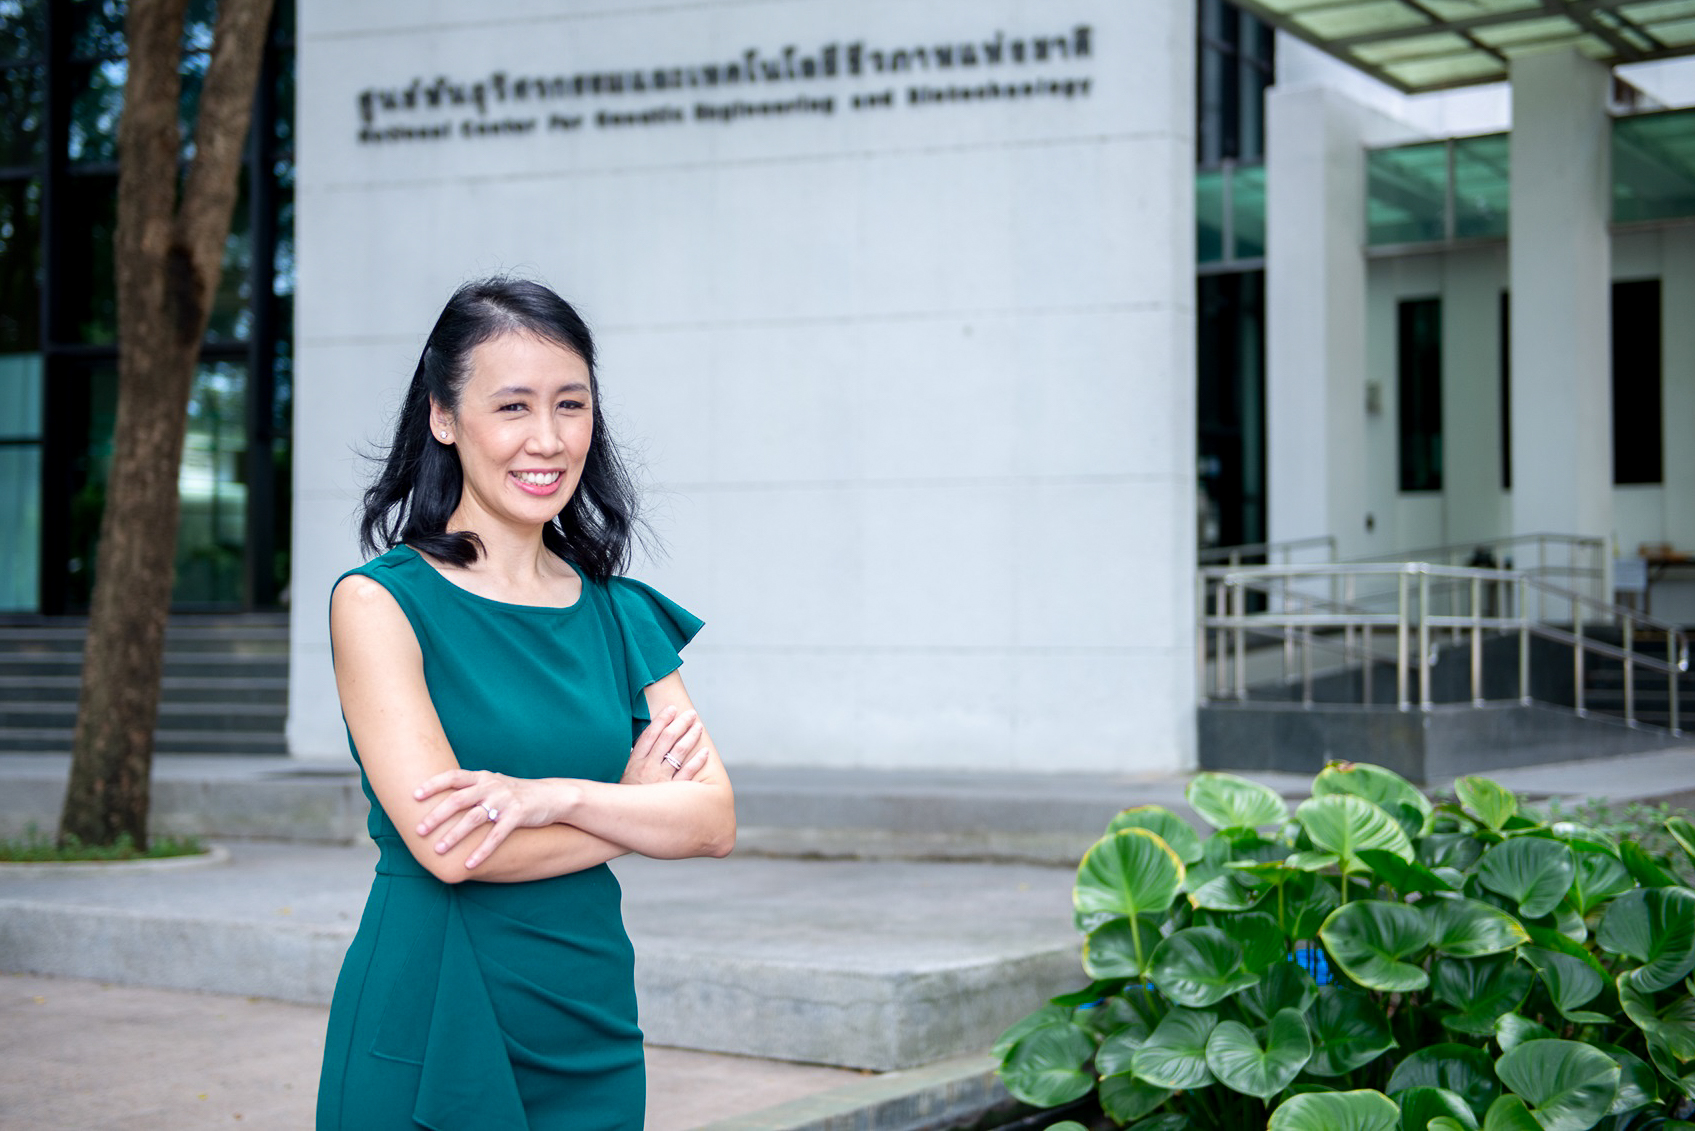 ‘ศูนย์วิจัยนานาชาติด้านความมั่นคงทางอาหาร’ เตรียมจัดงานประชุมวิชาการระดับนานาชาติ ASEAN-ASSET 2023 ผลักดันประเทศไทยเป็นศูนย์กลางการวิจัยหนุนครัวไทยสู่ครัวโลก